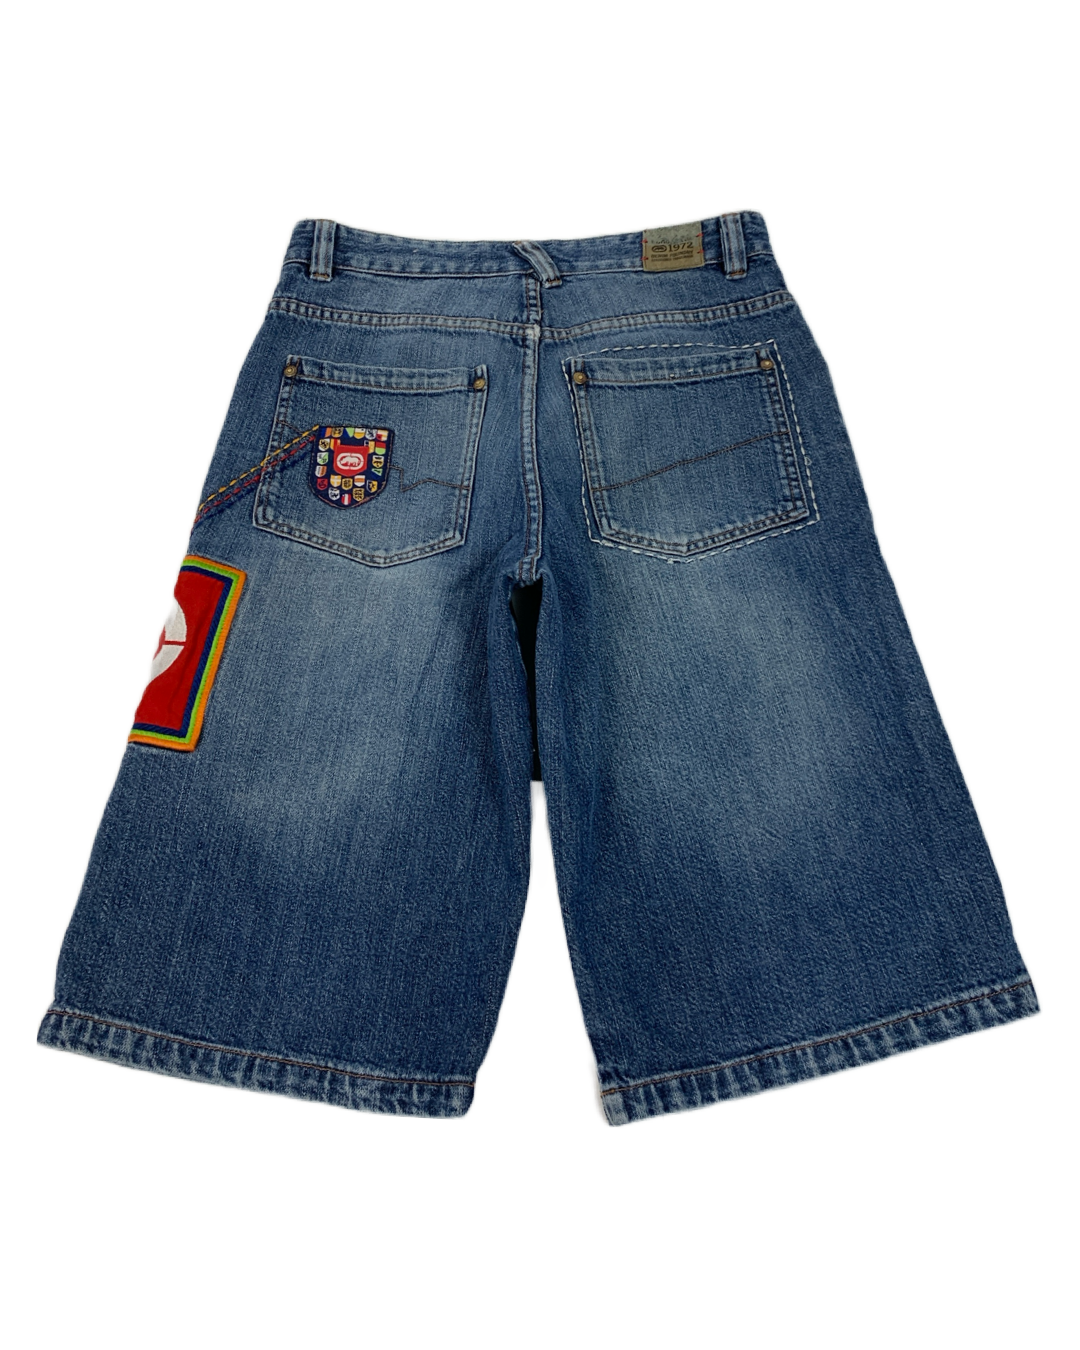 Ecko Untld. Vintage Y2K Shorts - 32